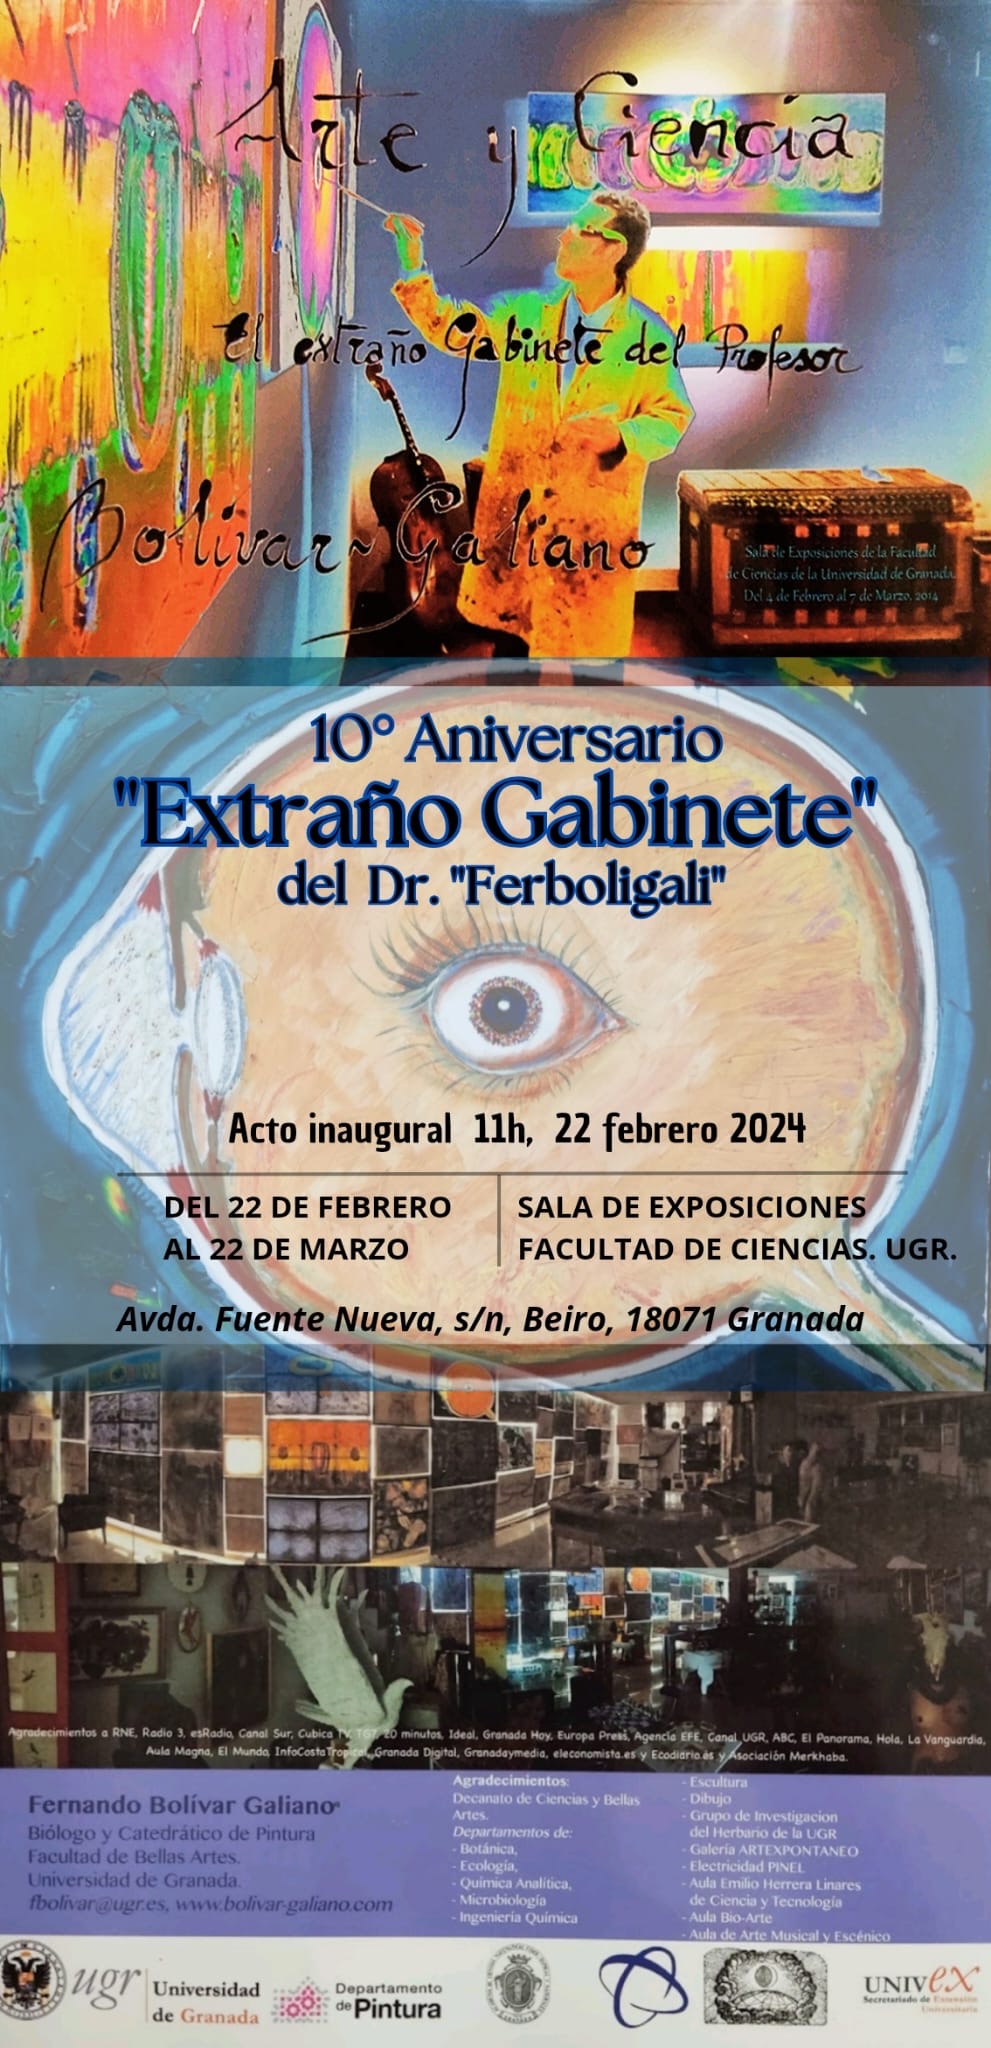 Exposición 10° Aniversario del "Extraño Gabinete" del Dr. "Ferboligali"